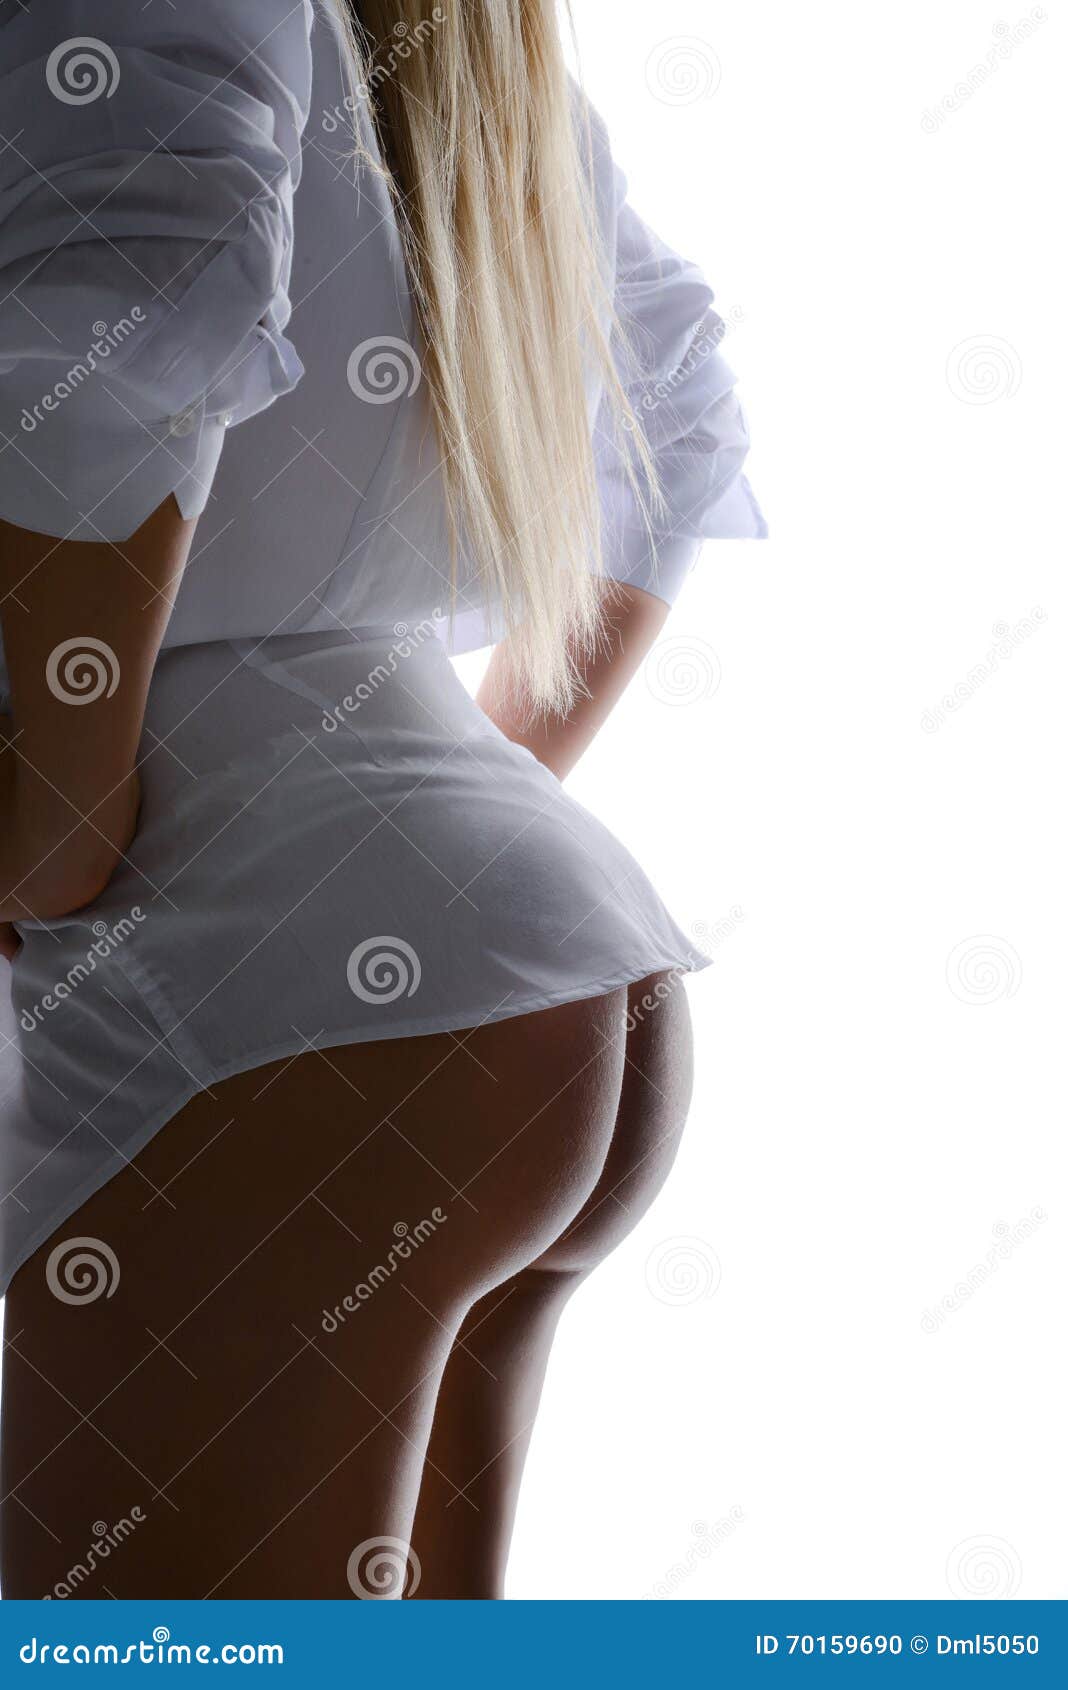 blonde ass